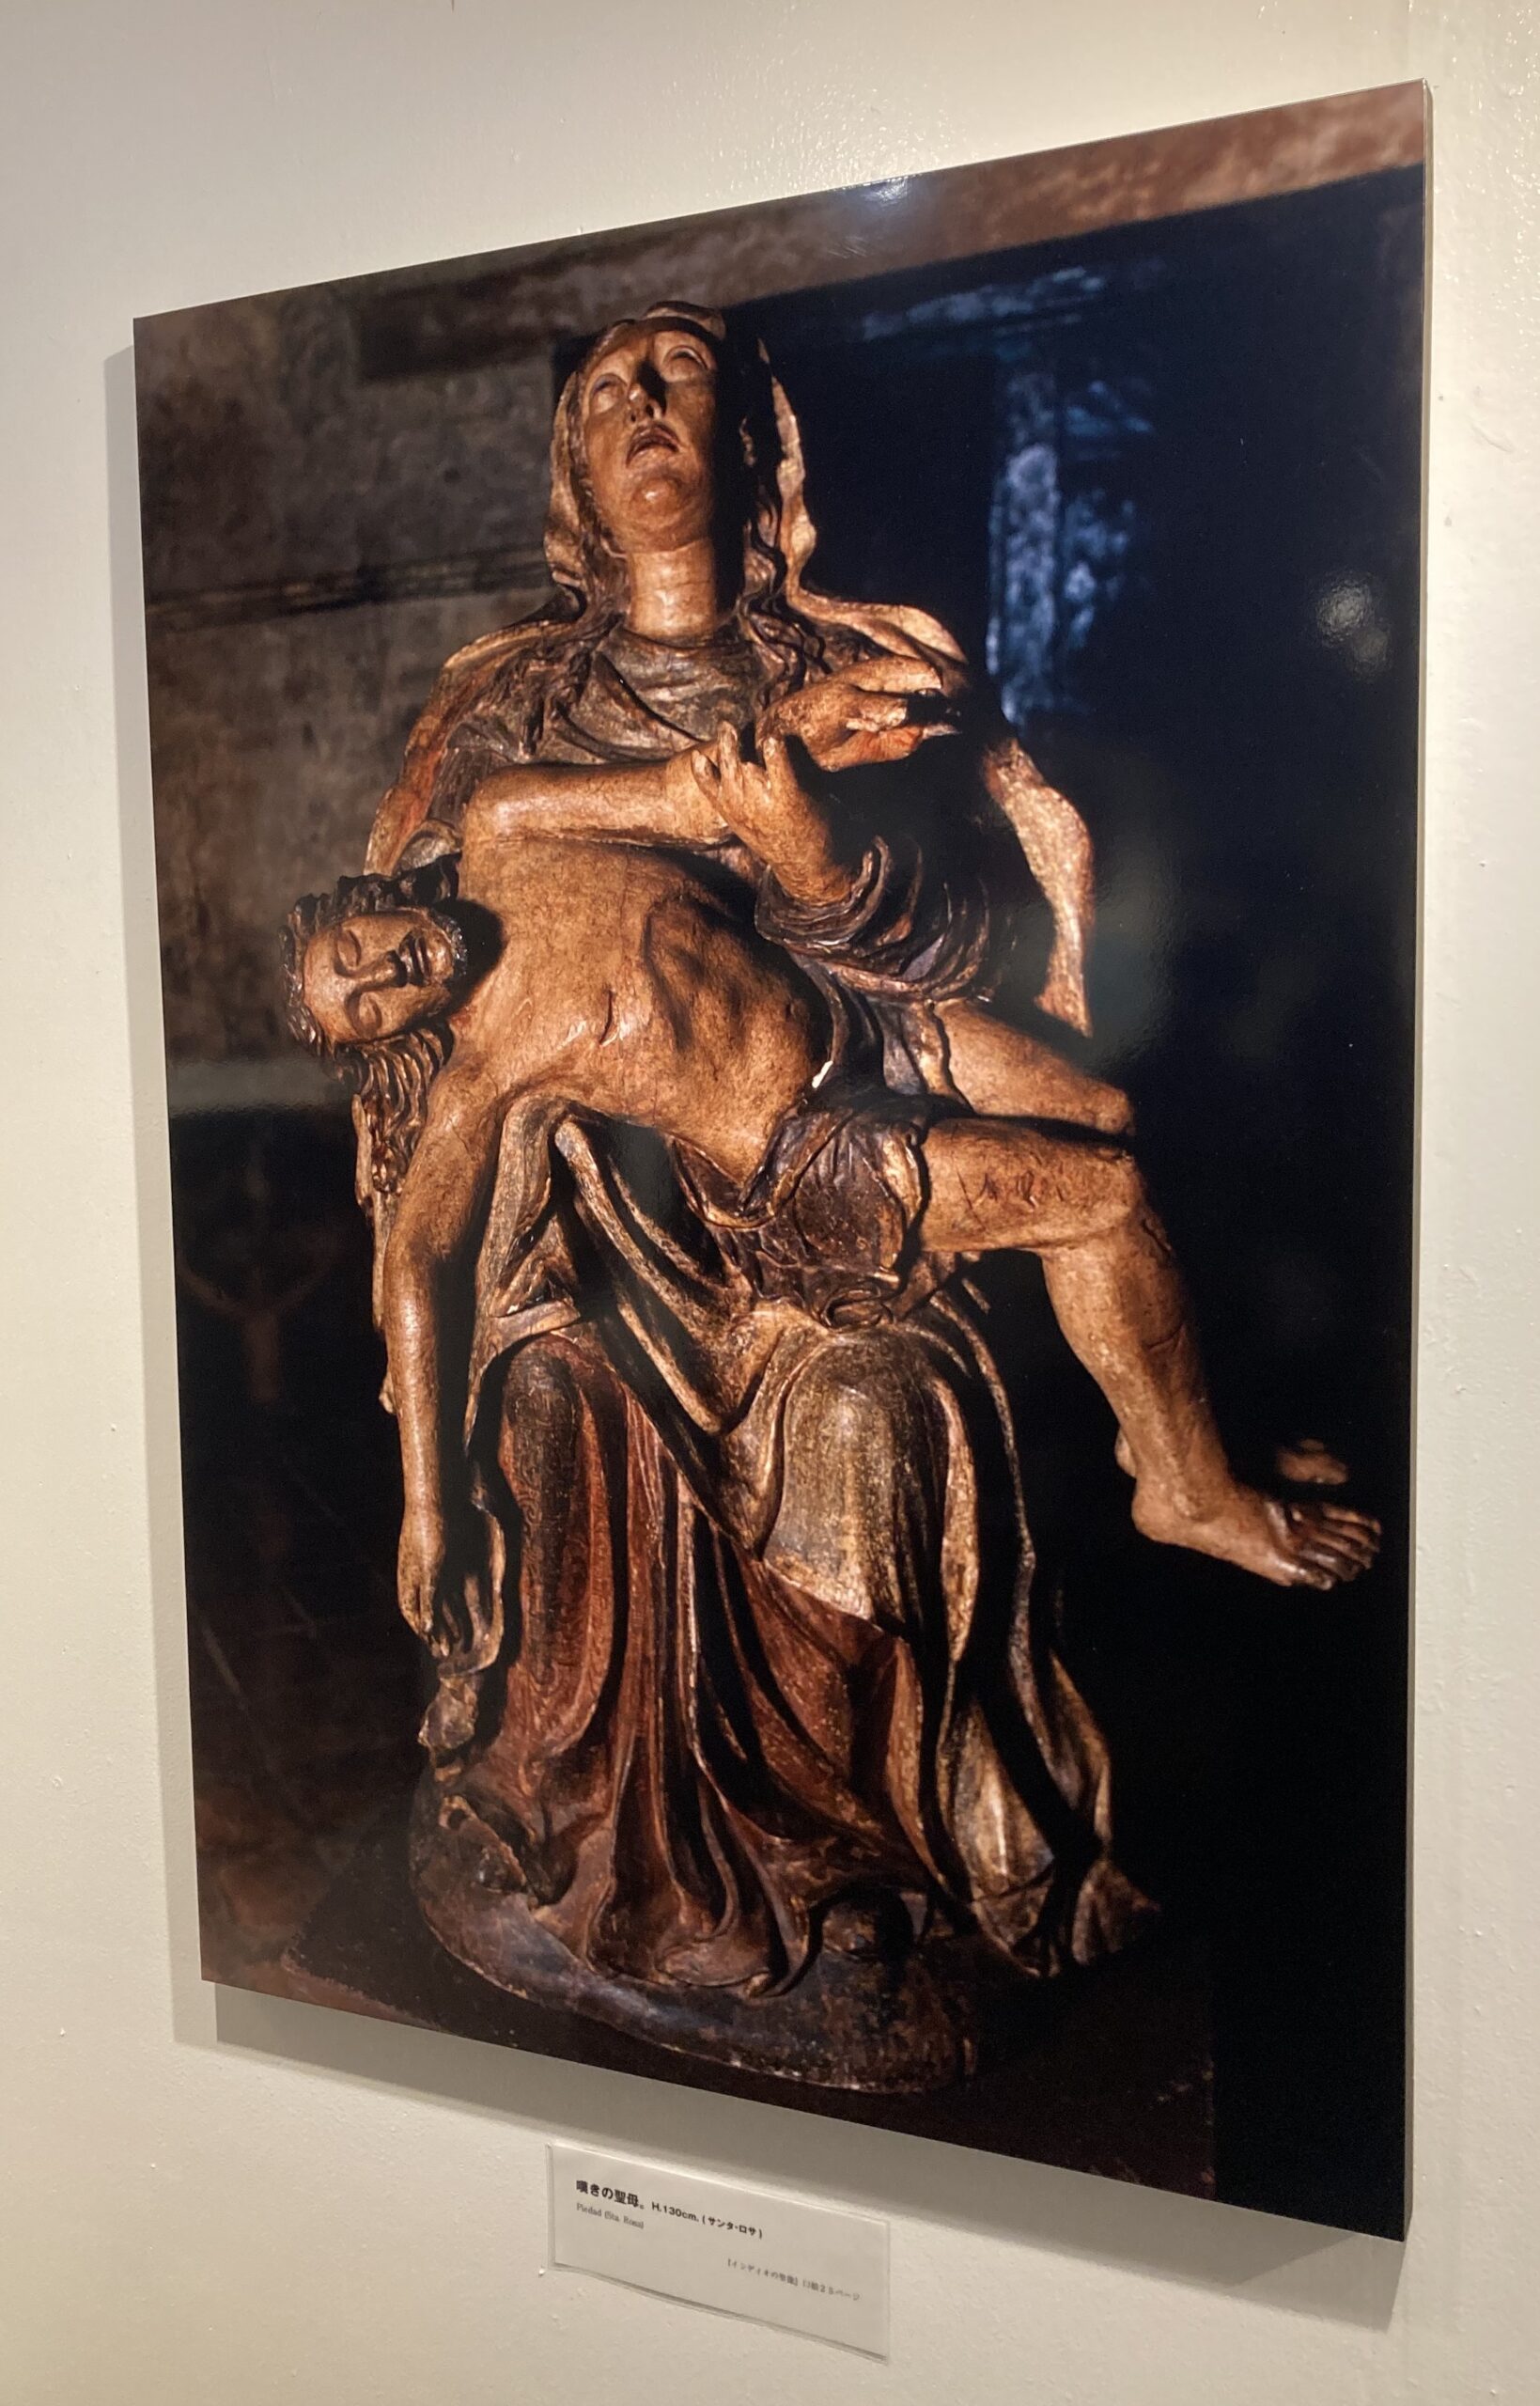 写真展の展示室に飾られたインディオの聖像のパネル写真の数々③